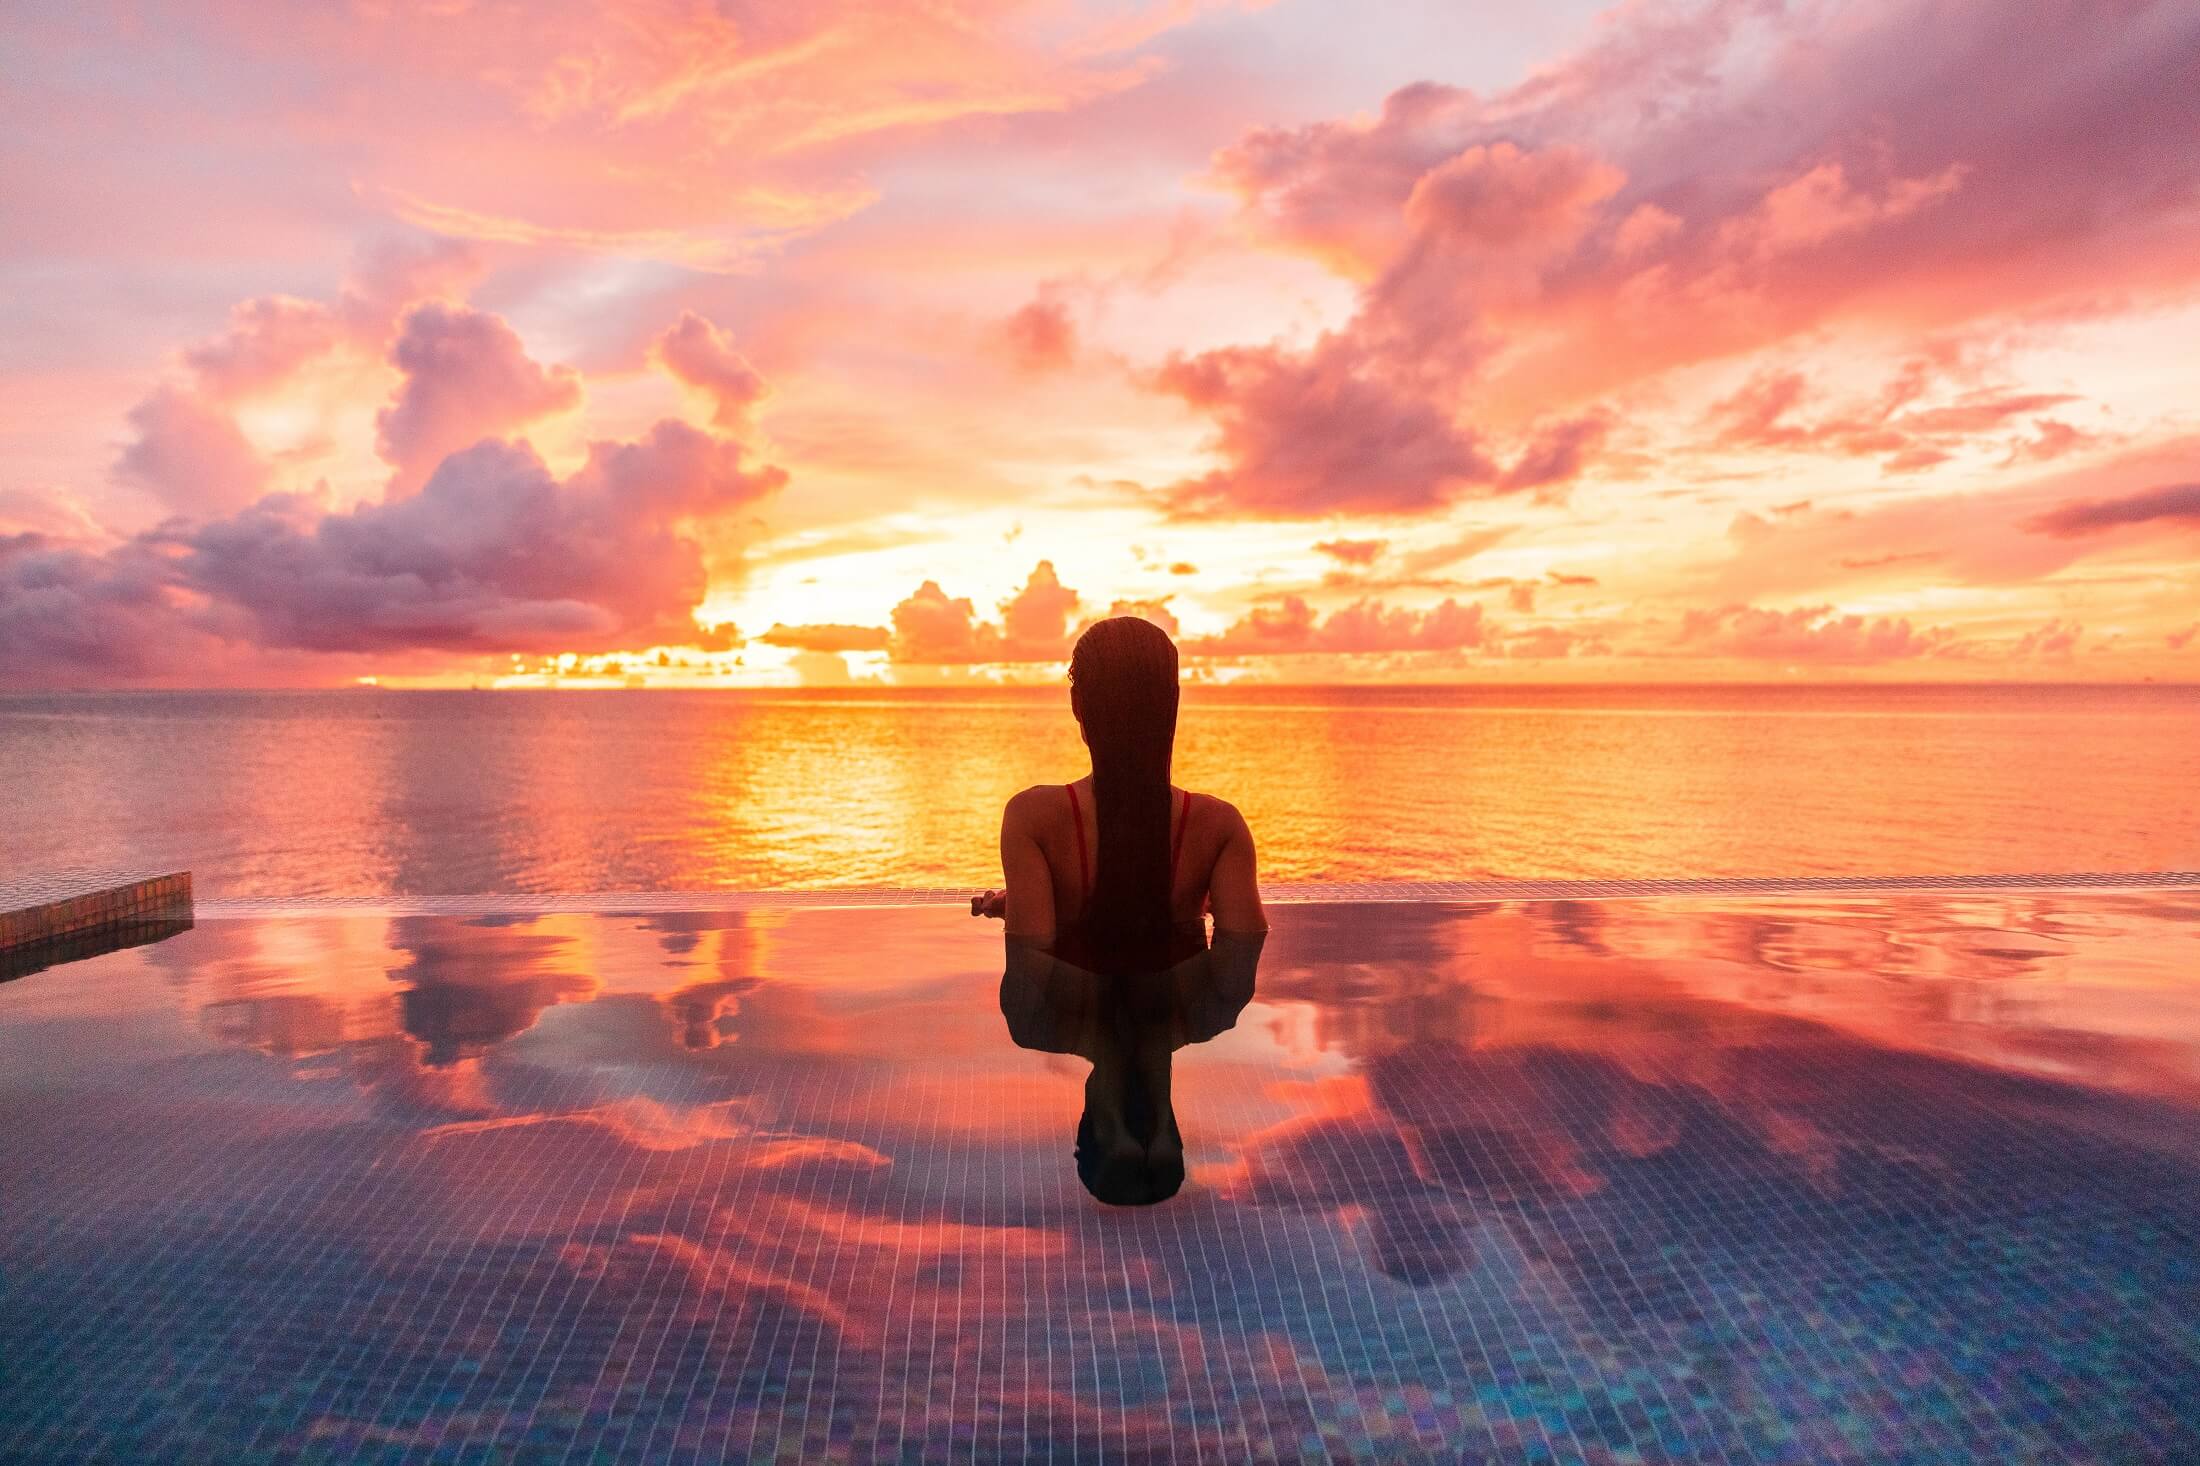 Paradise luksusowy ośrodek miodowy wypad miejsce na idylliczne Karaiby tropikalny krajobraz hotelu, kobieta sylwetka pływanie w basenie bez krawędzi oglądania zachodu słońca spokojny. Zimowy wypad o zmierzchu.